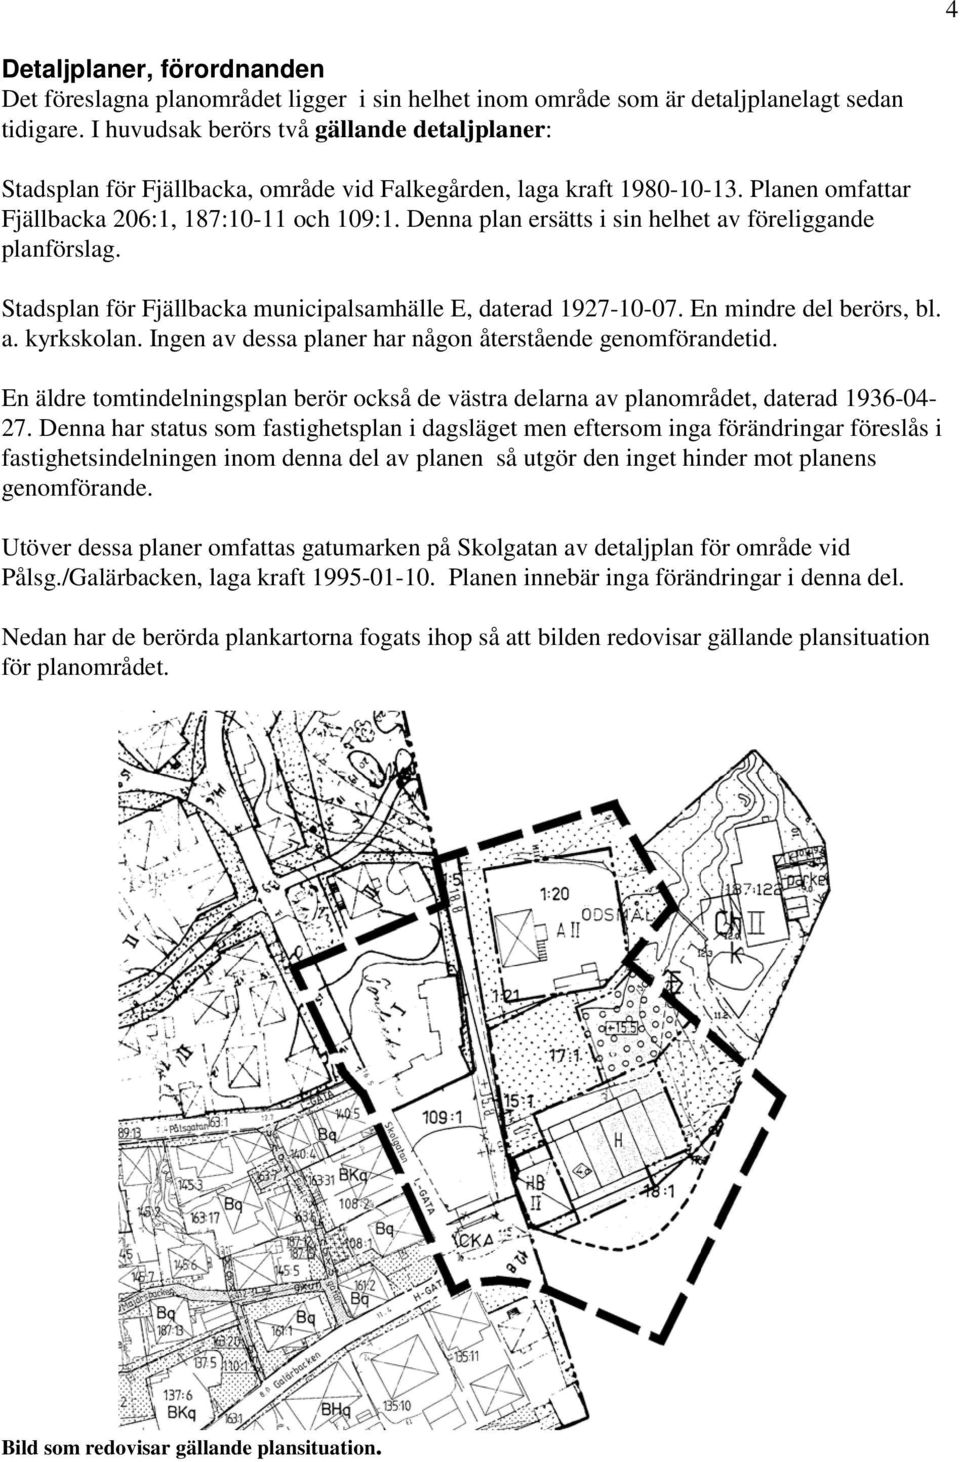 Denna plan ersätts i sin helhet av föreliggande planförslag. Stadsplan för Fjällbacka municipalsamhälle E, daterad 1927-10-07. En mindre del berörs, bl. a. kyrkskolan.